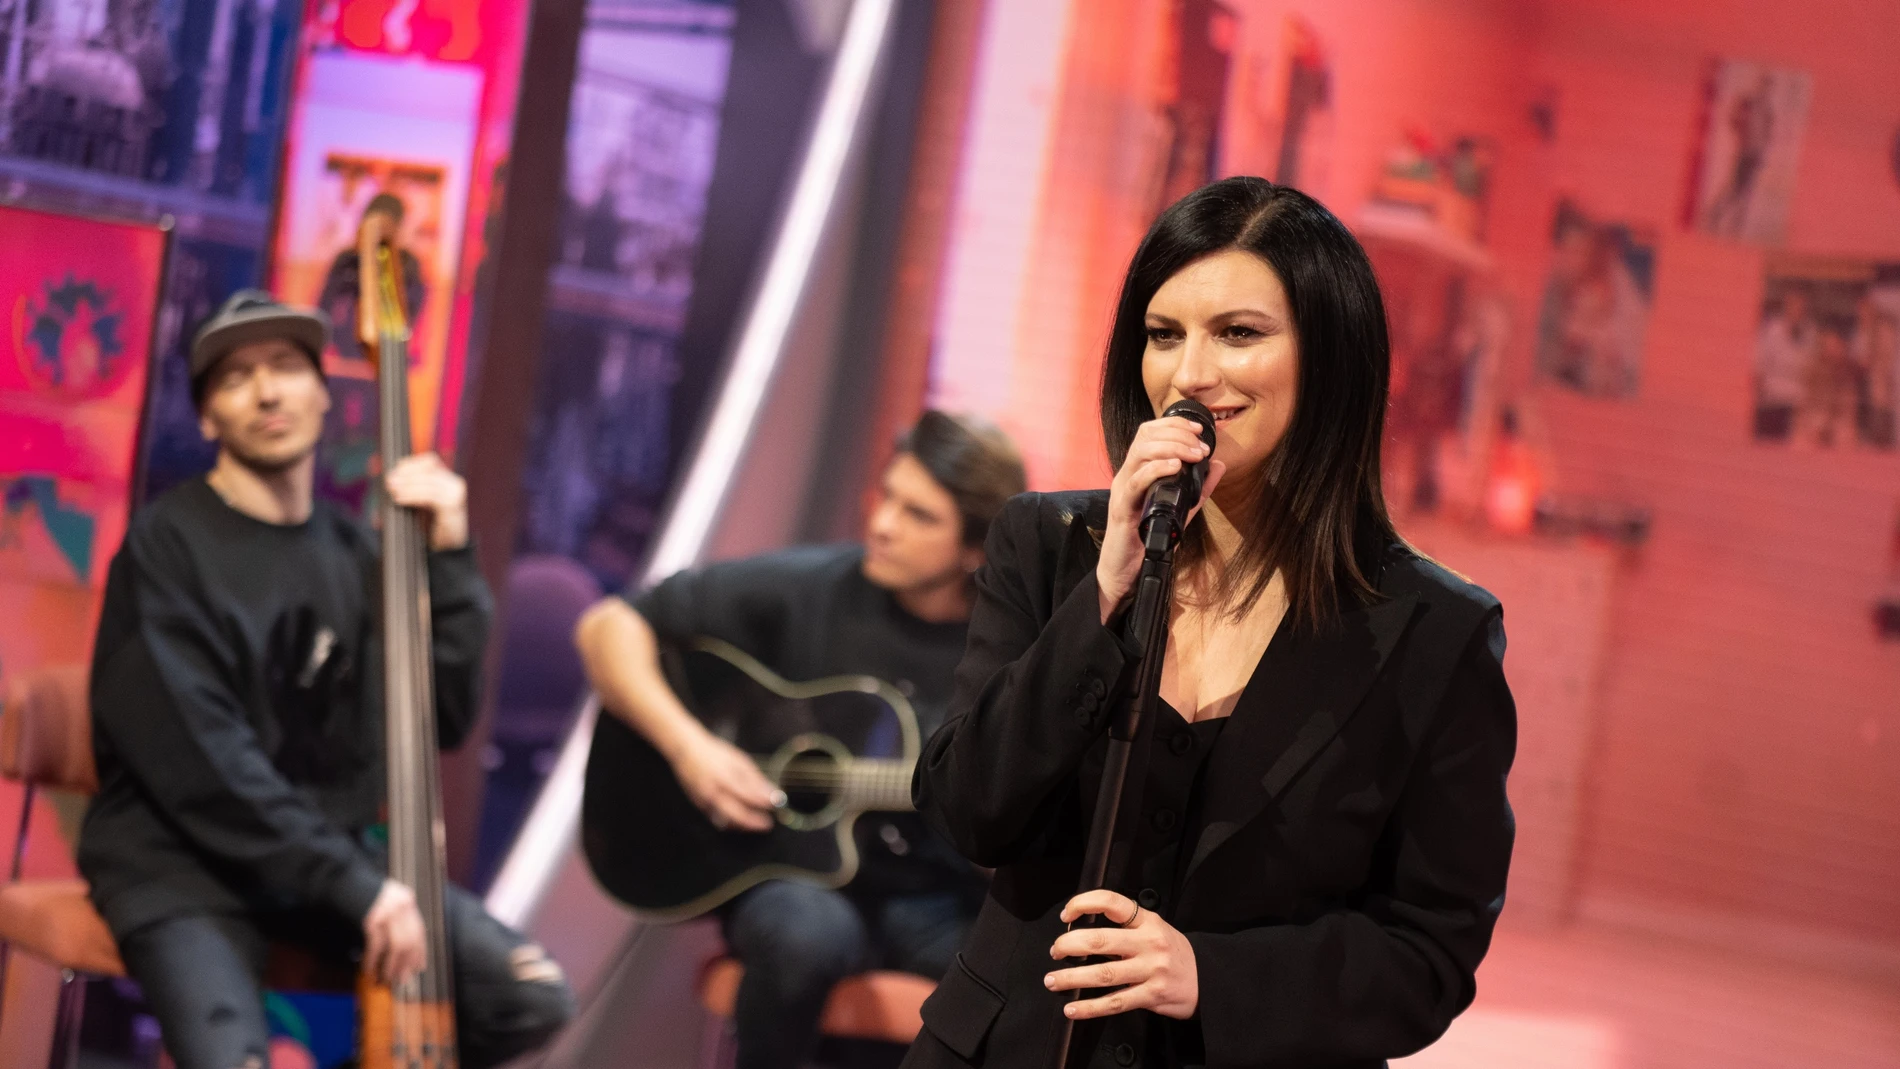 Laura Pausini canta en directo 'Caja' en 'El Hormiguero 3.0'